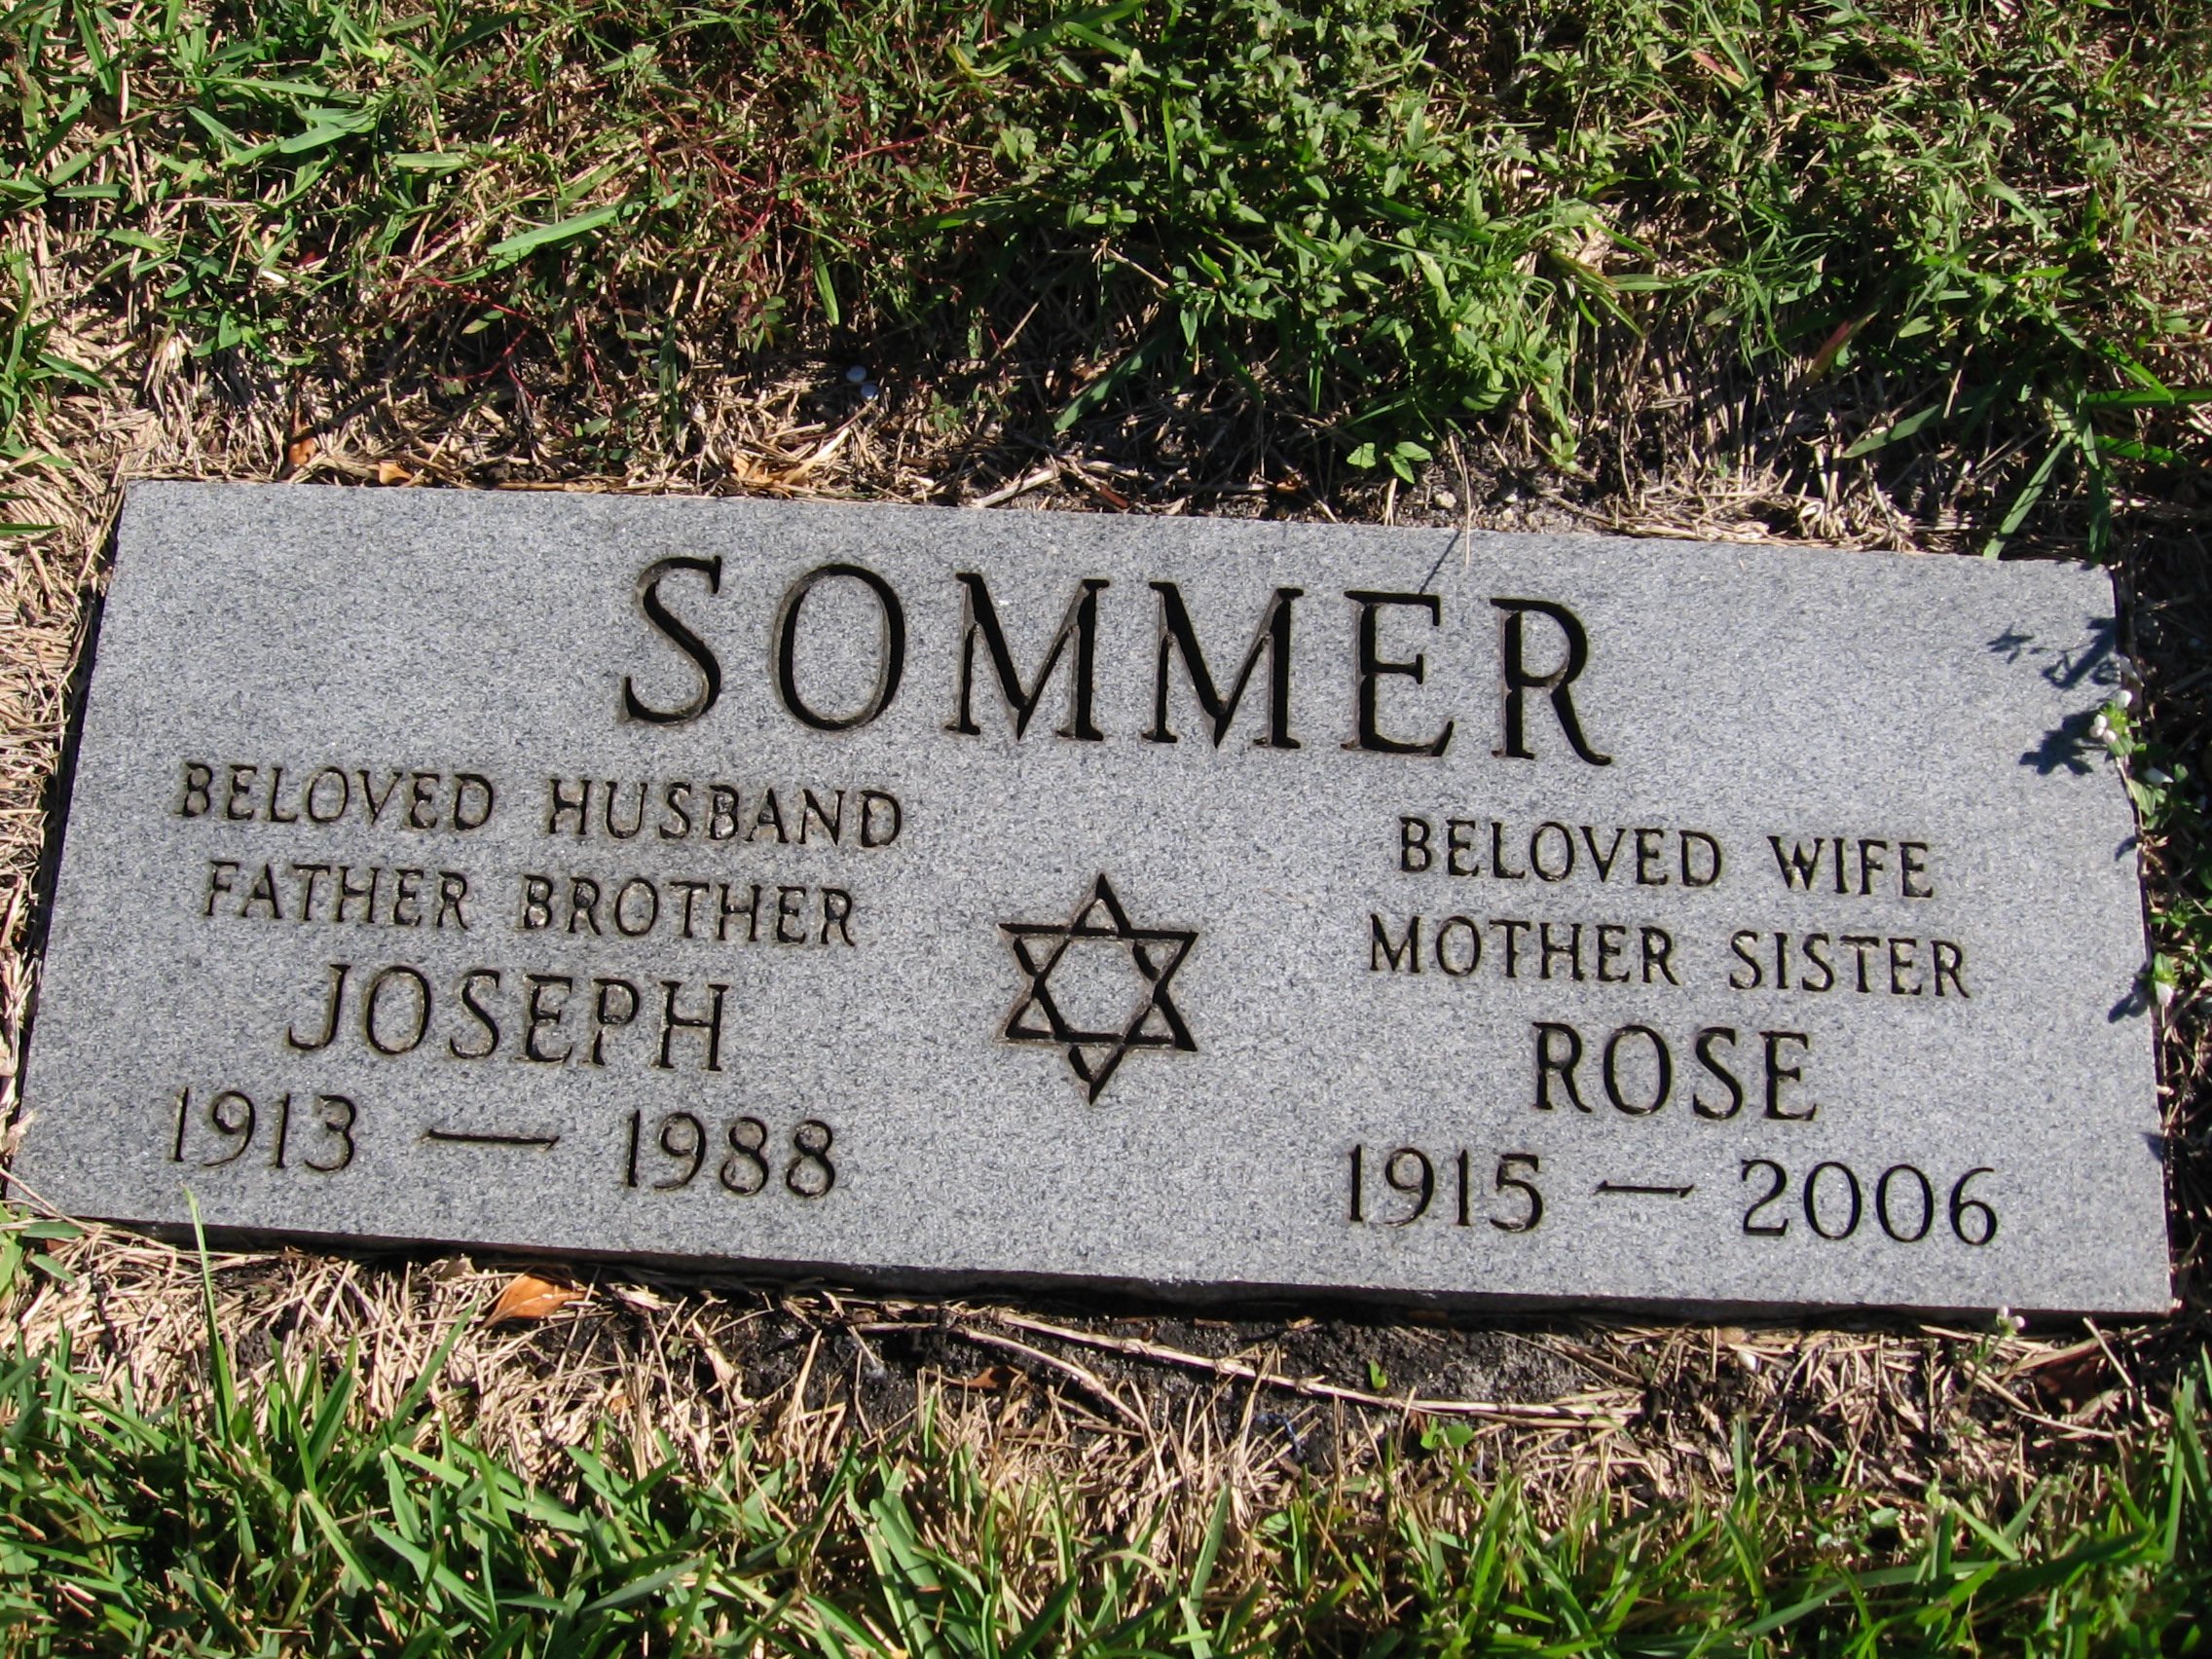 Joseph Sommer